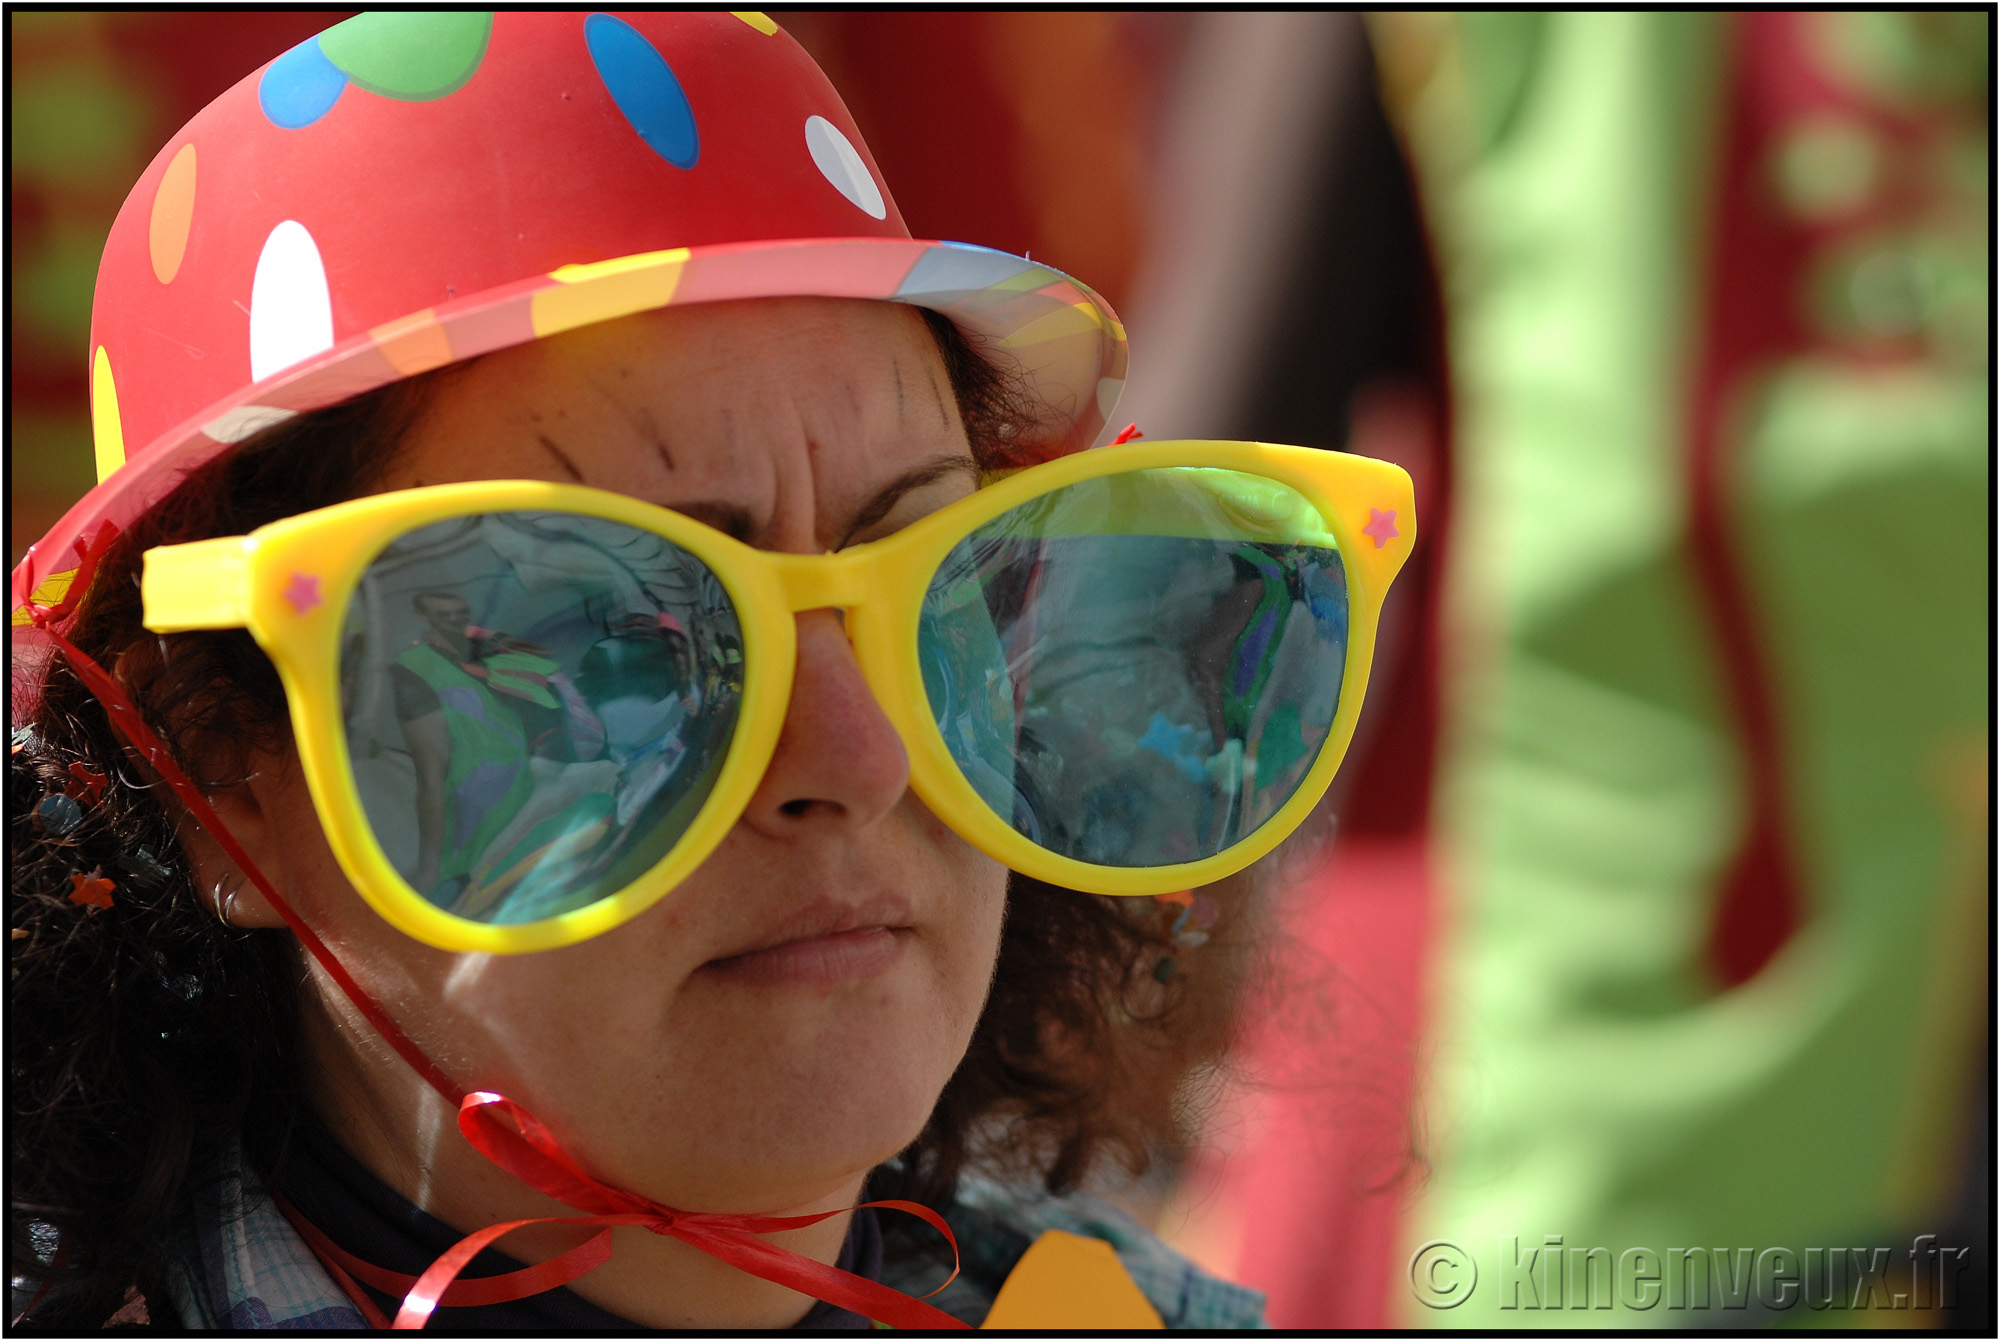 kinenveux_71_carnaval2015lr.jpg - Carnaval des Enfants 2015 - La Rochelle